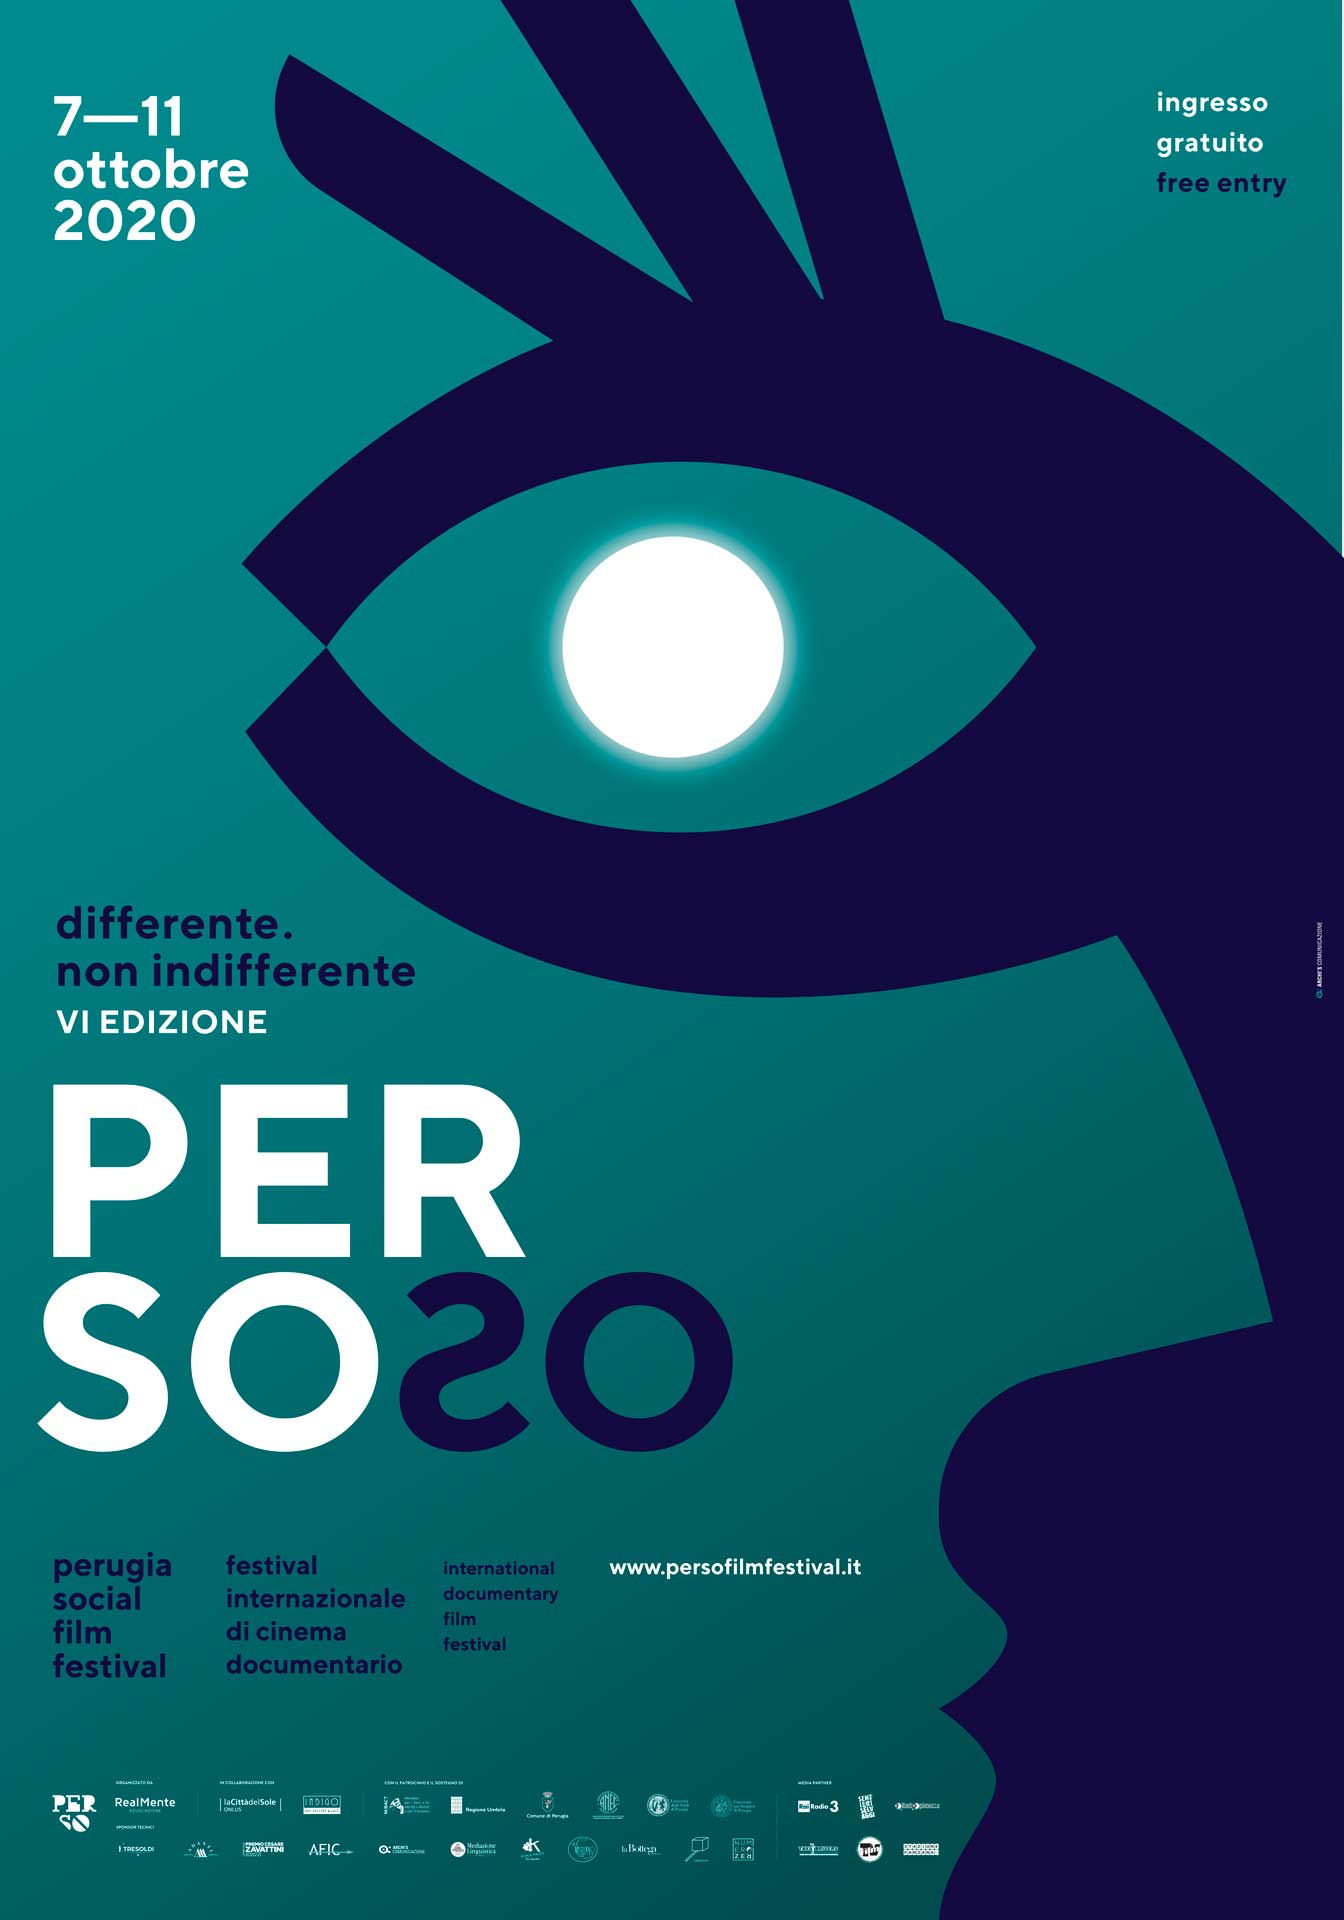 Perso Film festival 2020